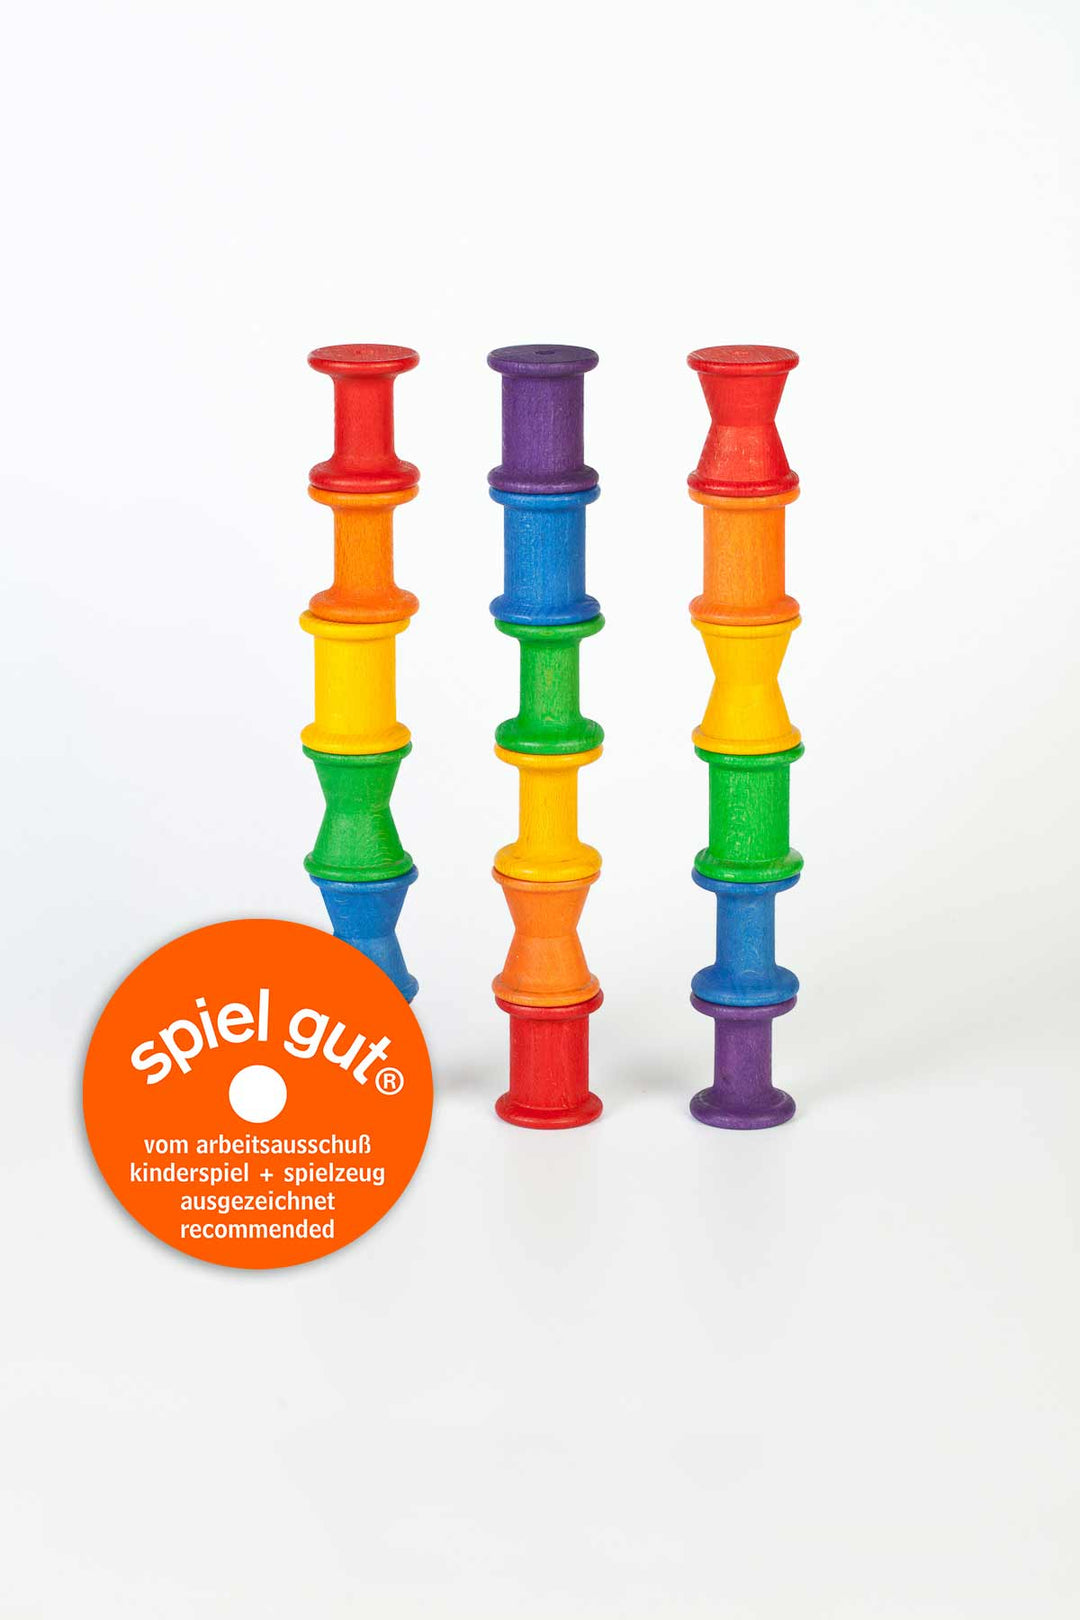 Grapat Toys > Loose Parts Play > Wooden Spools 18 Spools Grapat Rainbow Spools